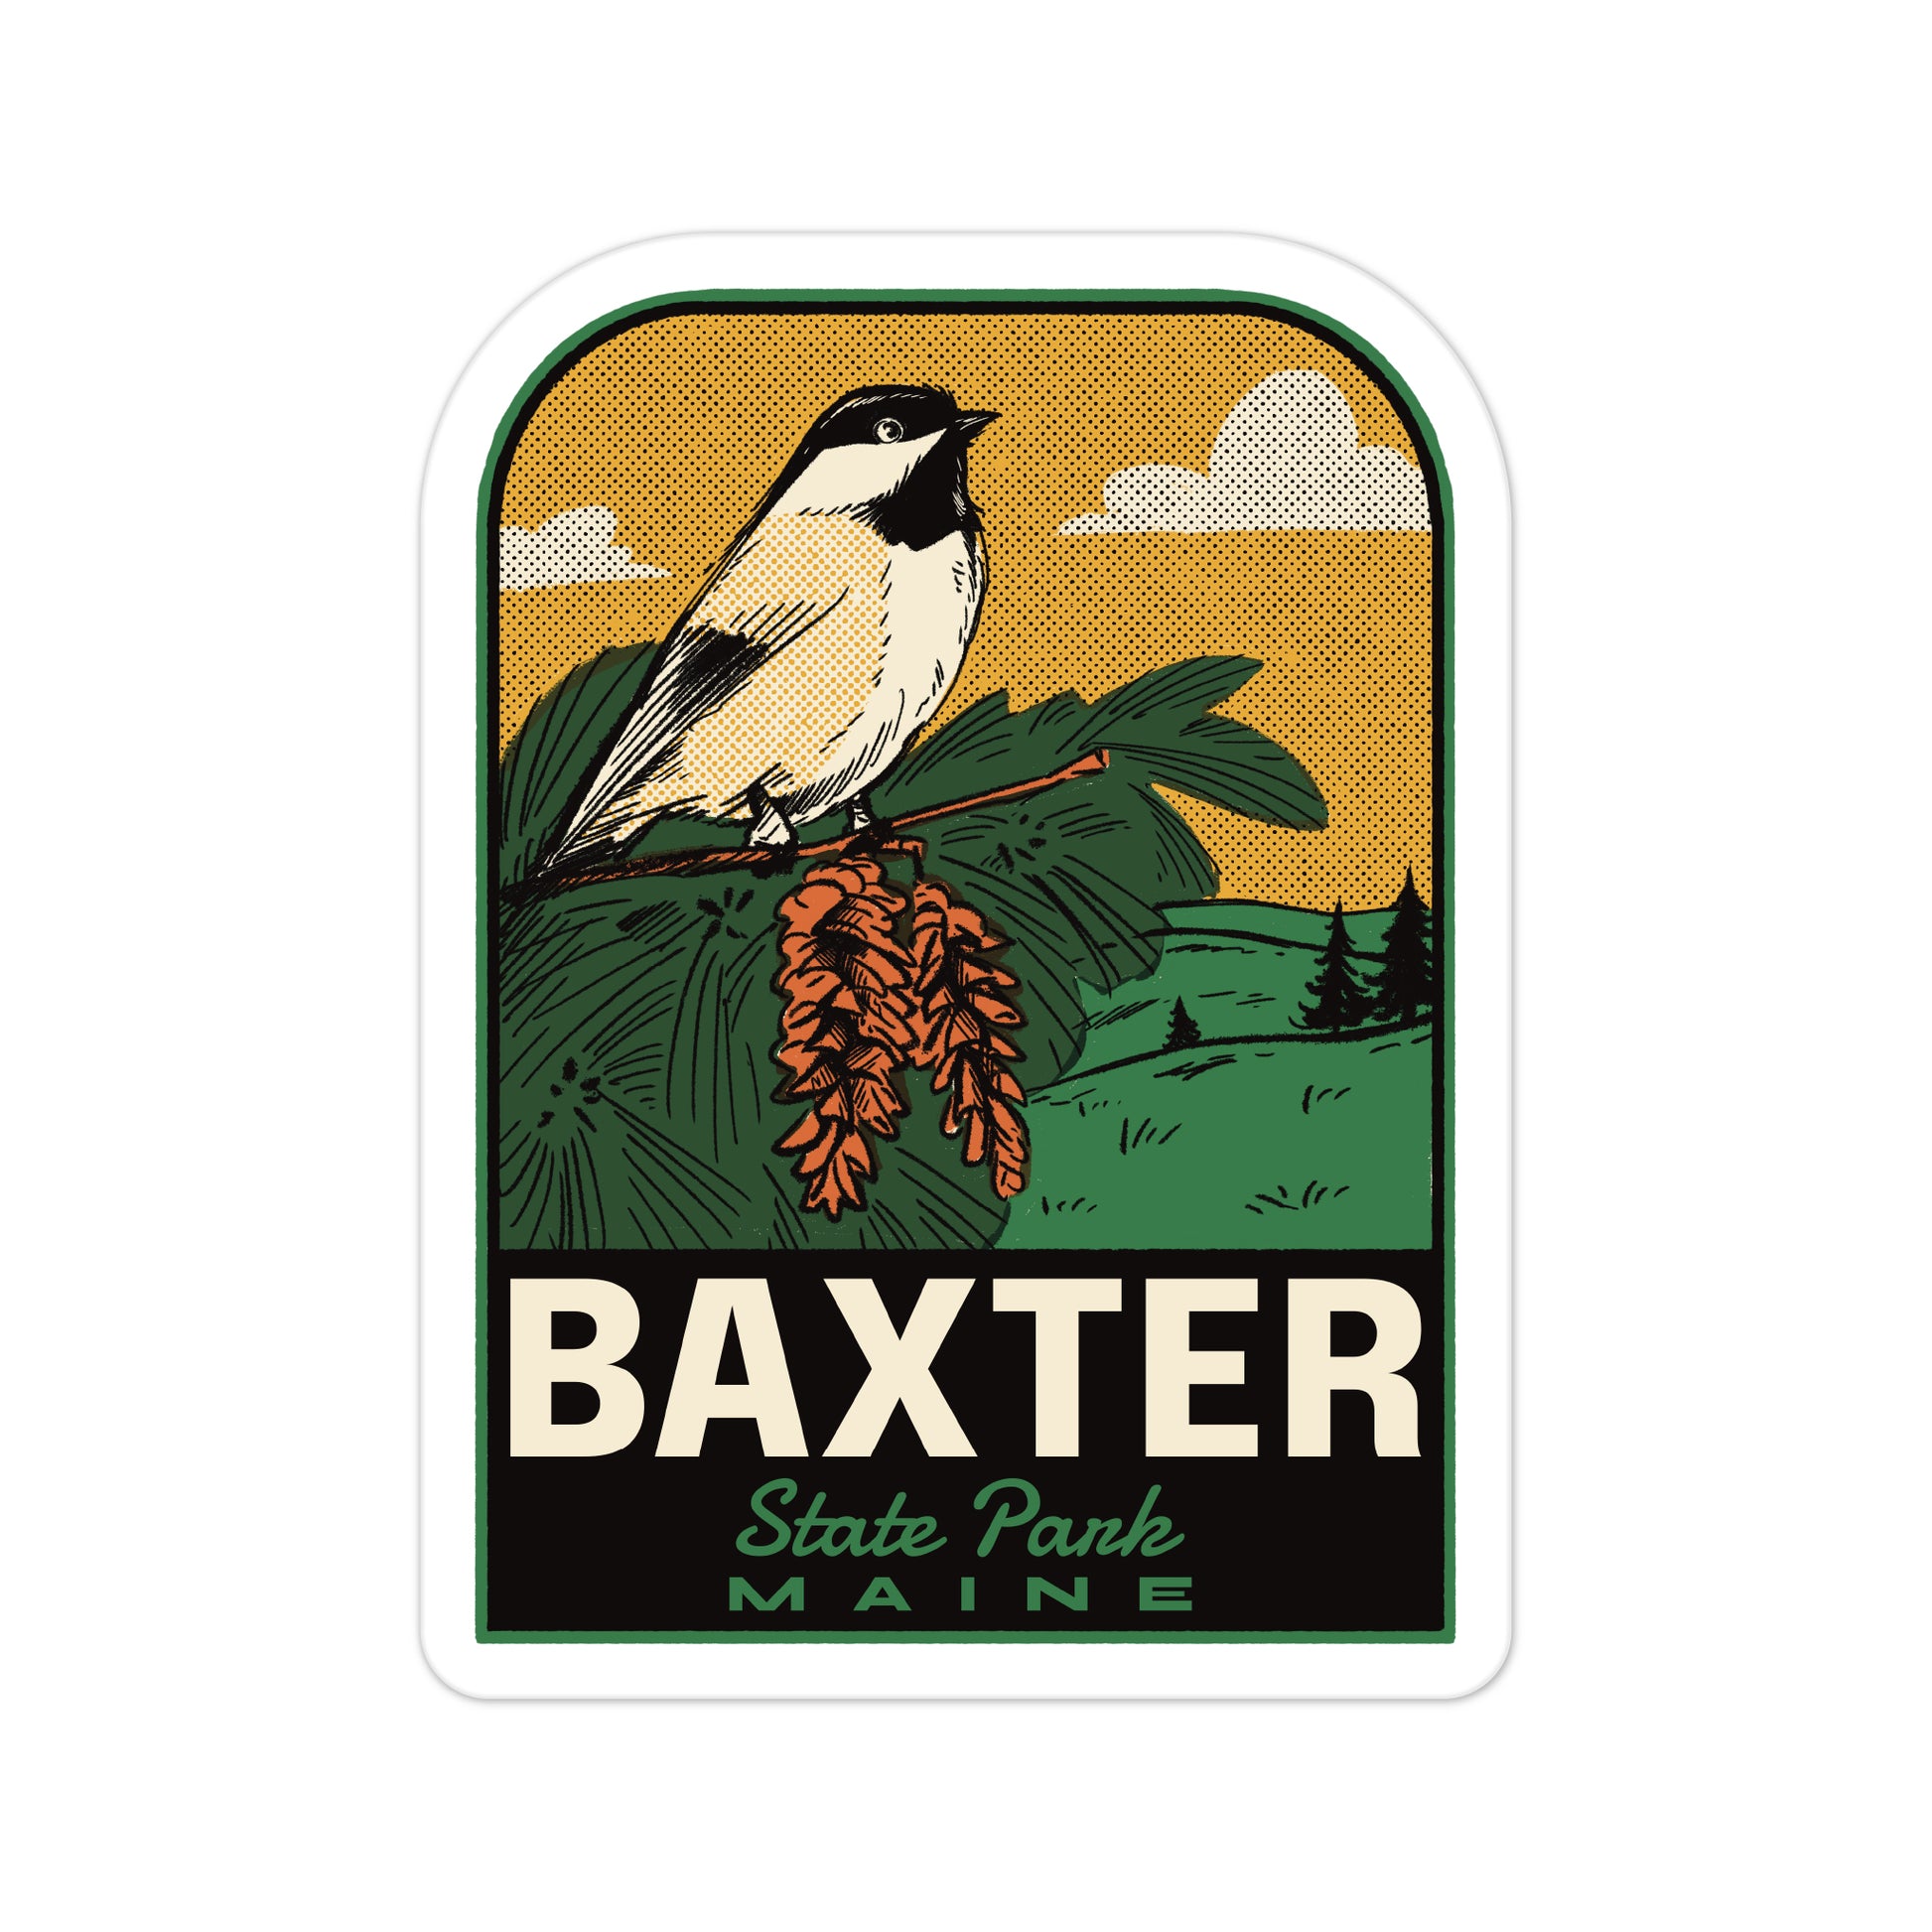 A sticker of Baxter State Park